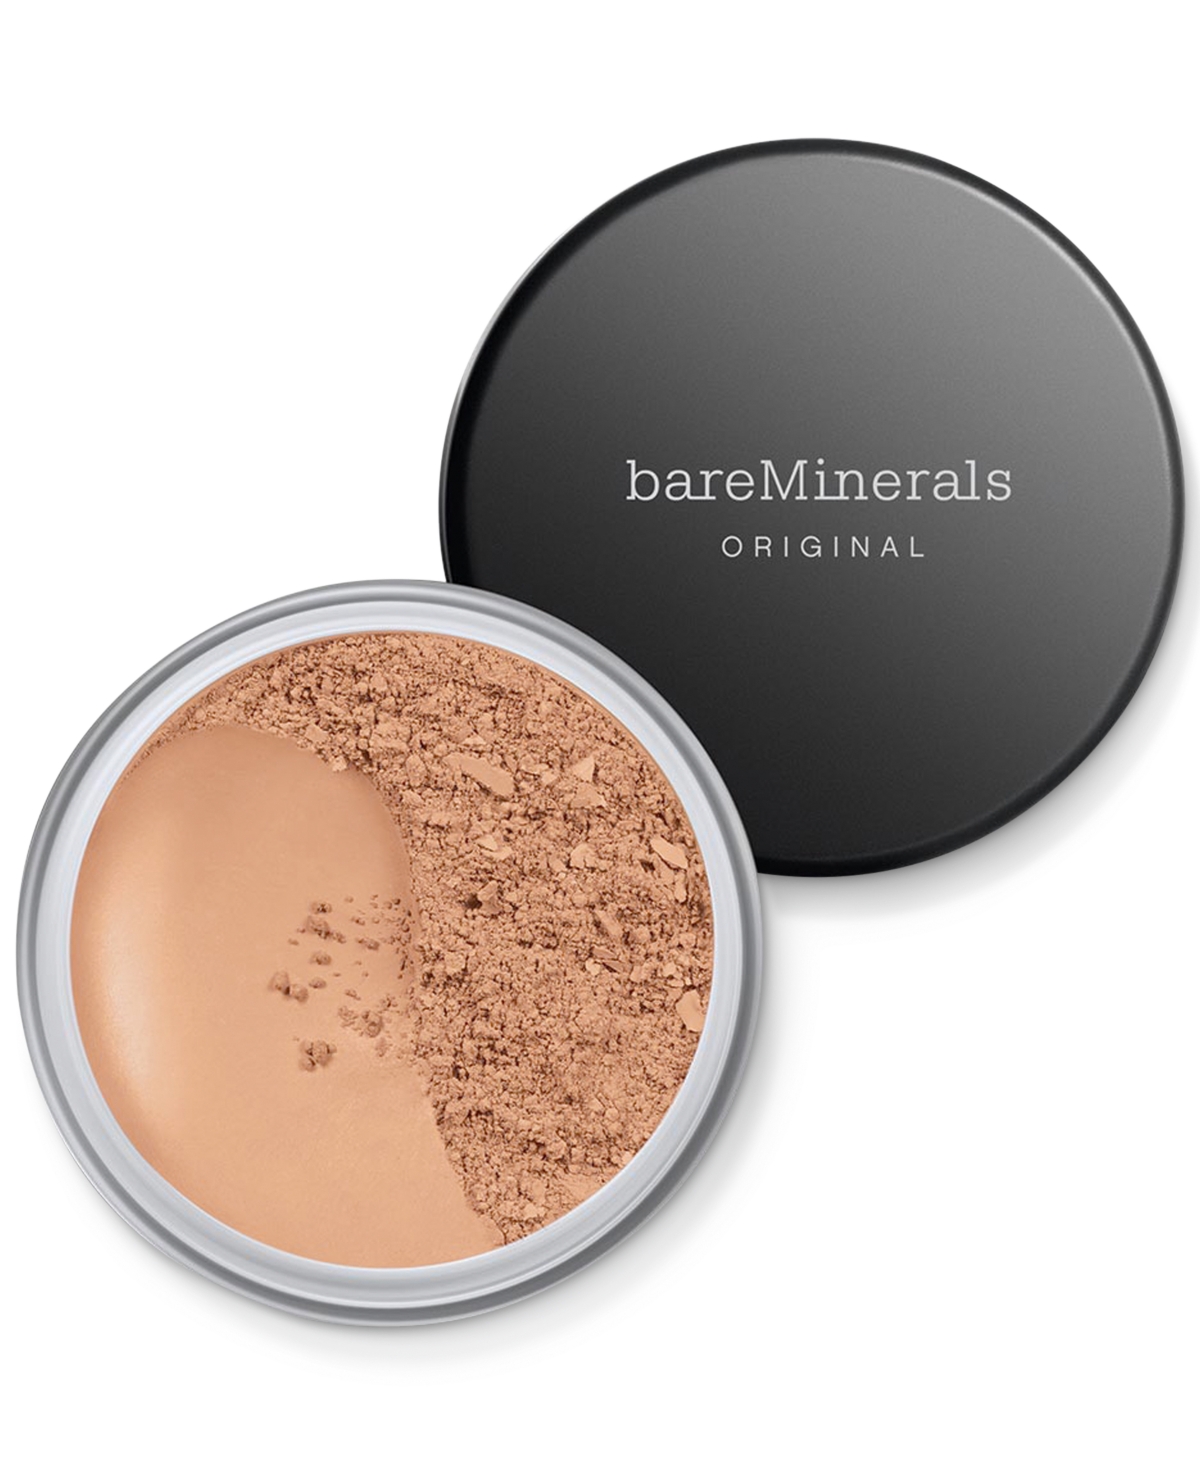 Bareminerals Original Loose Powder Foundation Spf 15 In Golden Beige  - For Light To Medium Skin